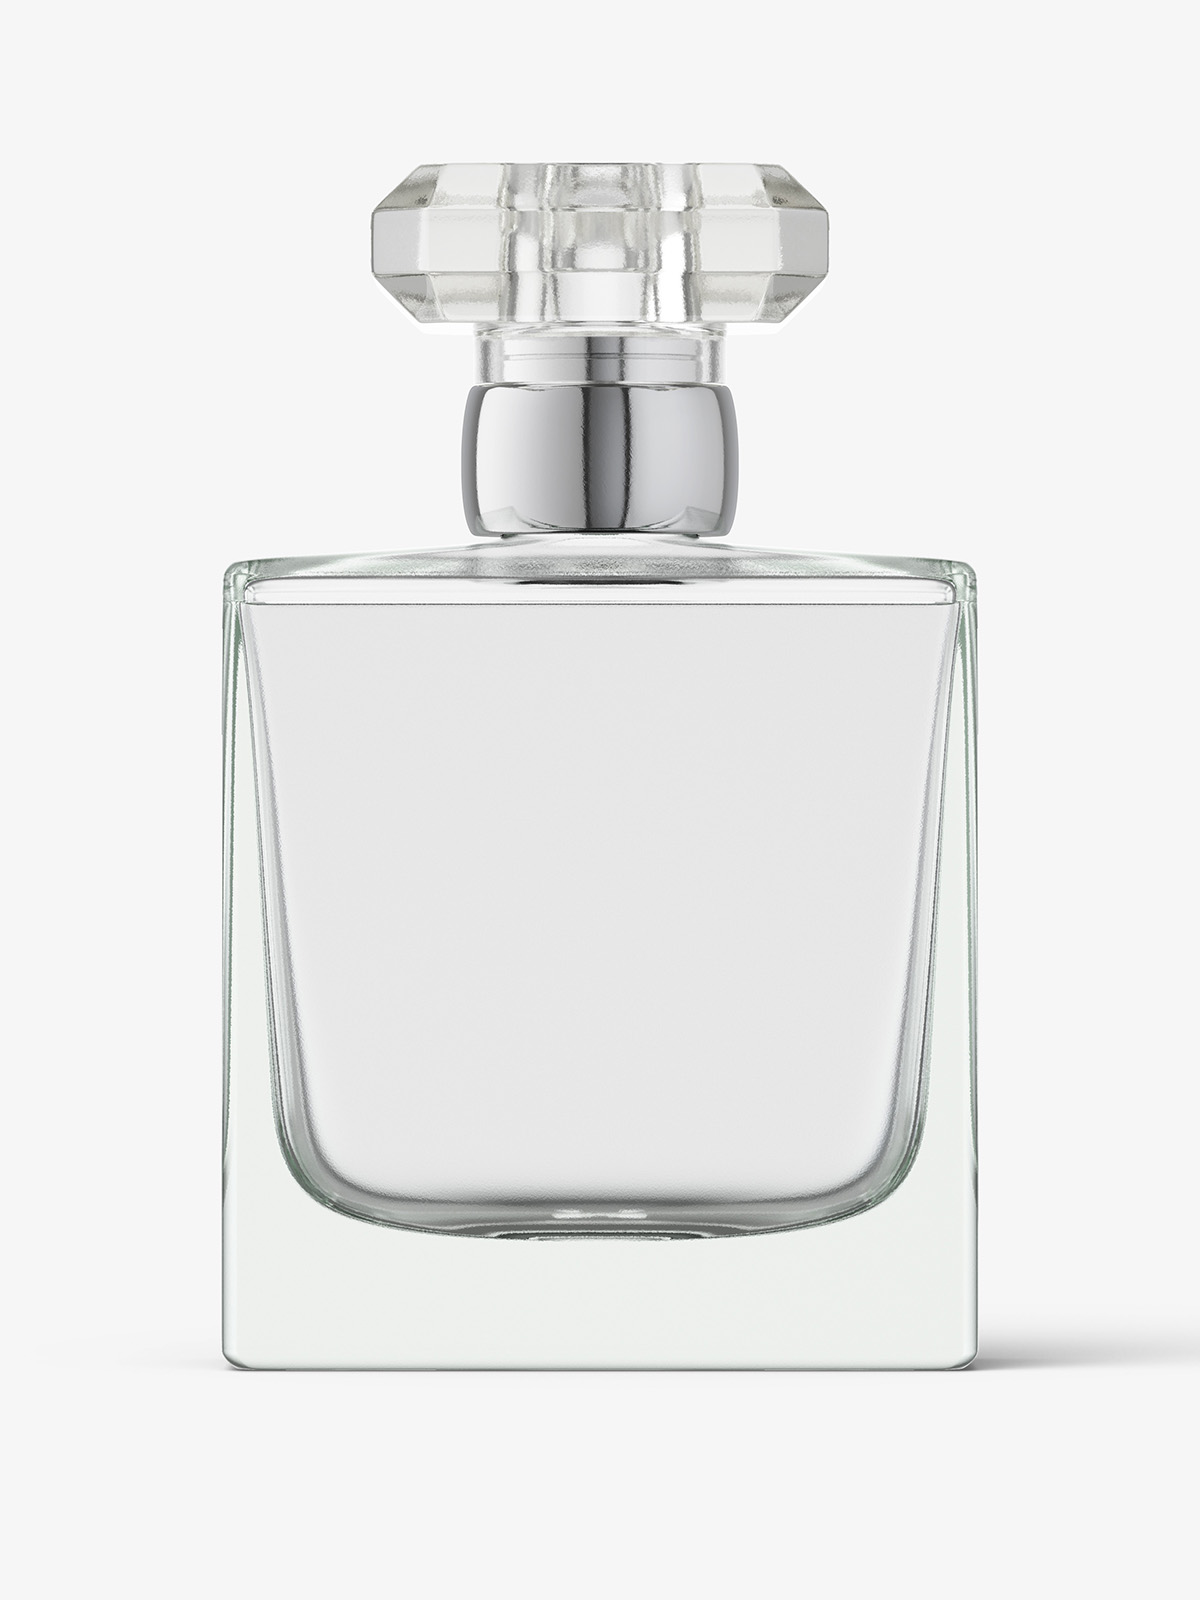 Fragrance Bottle